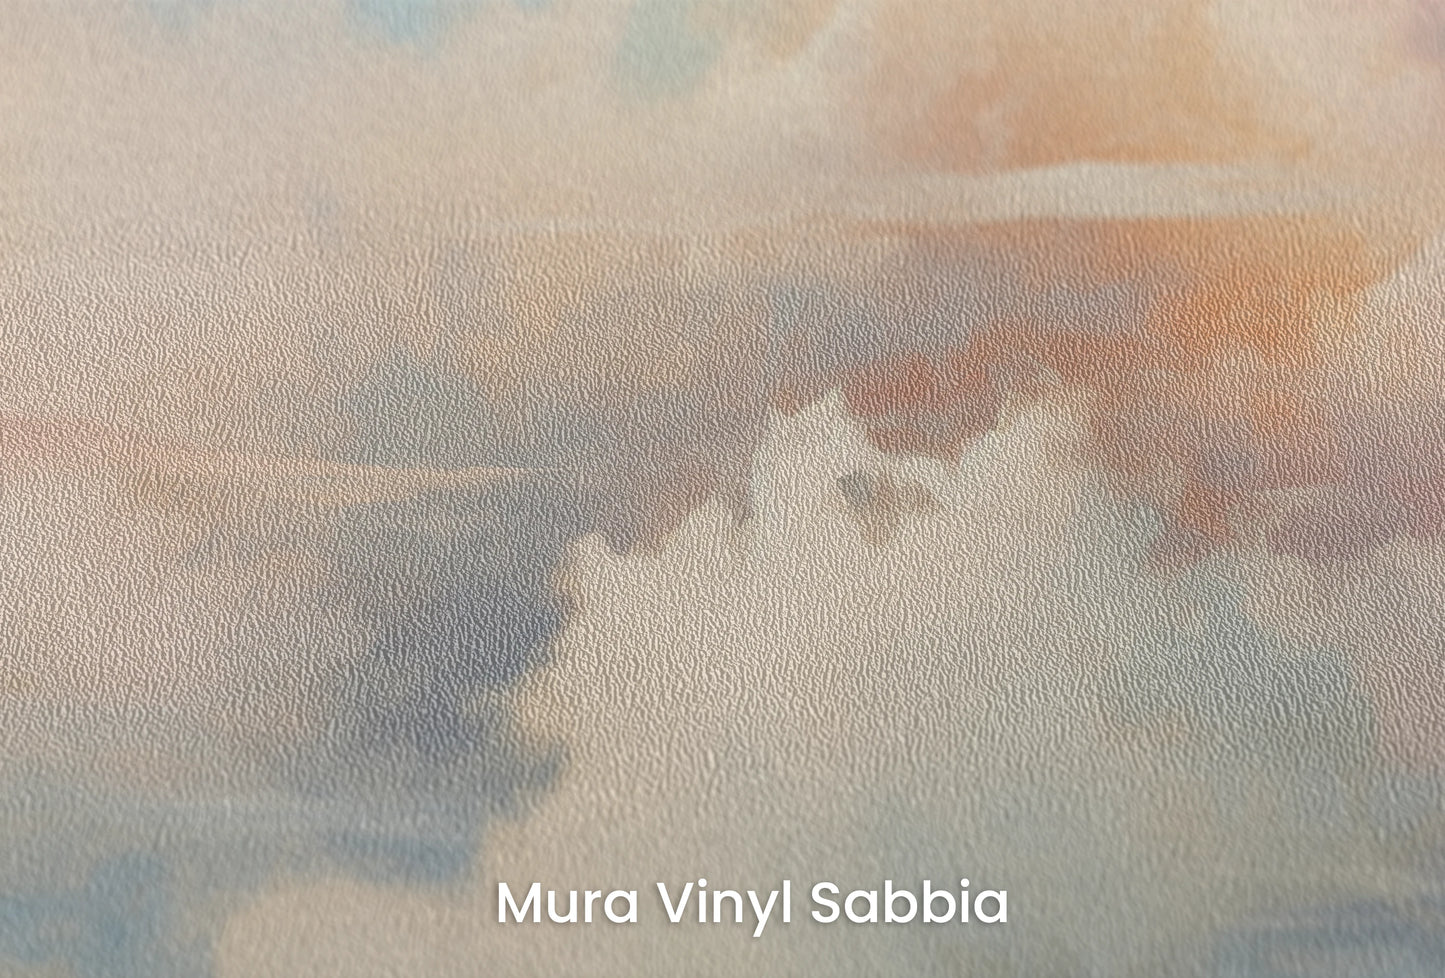 Zbliżenie na artystyczną fototapetę o nazwie Whispering Hues na podłożu Mura Vinyl Sabbia struktura grubego ziarna piasku.